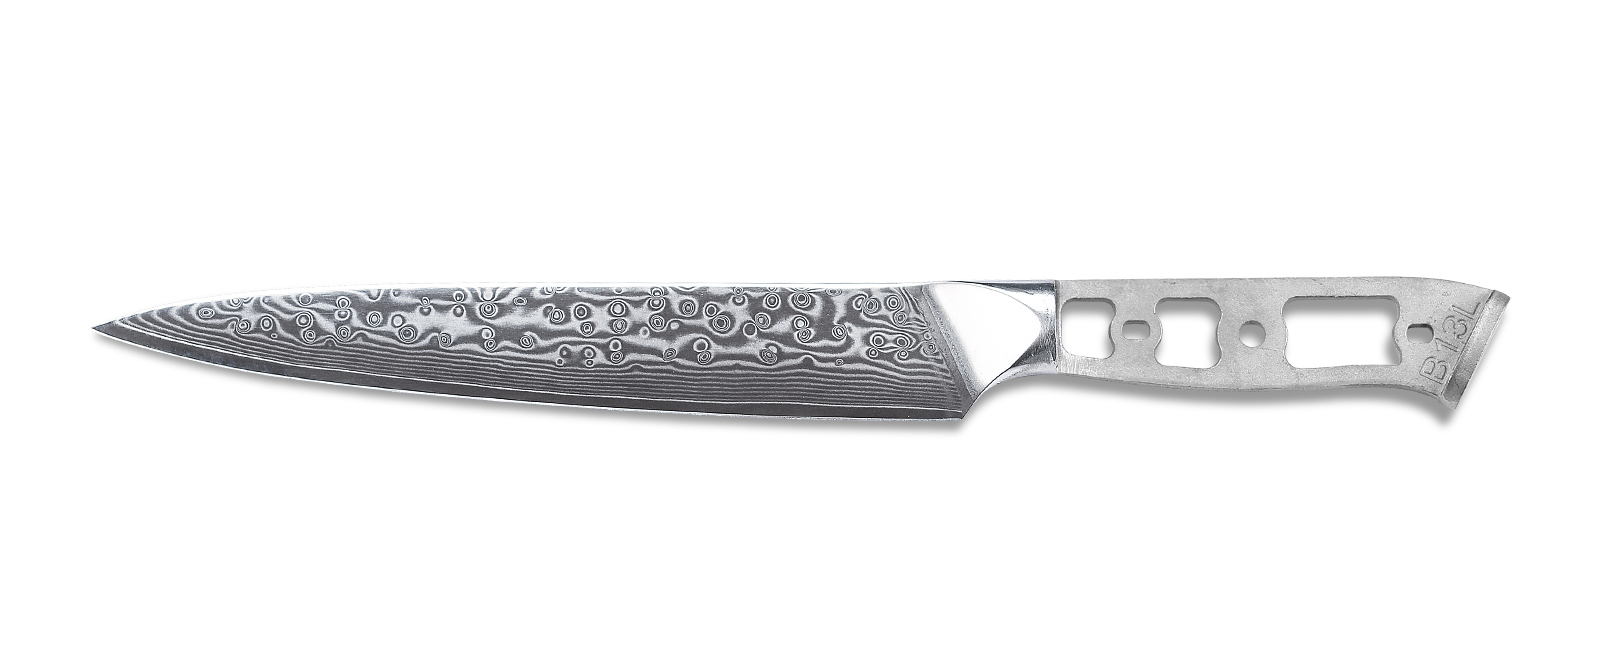 Damascus Knife Making Kit